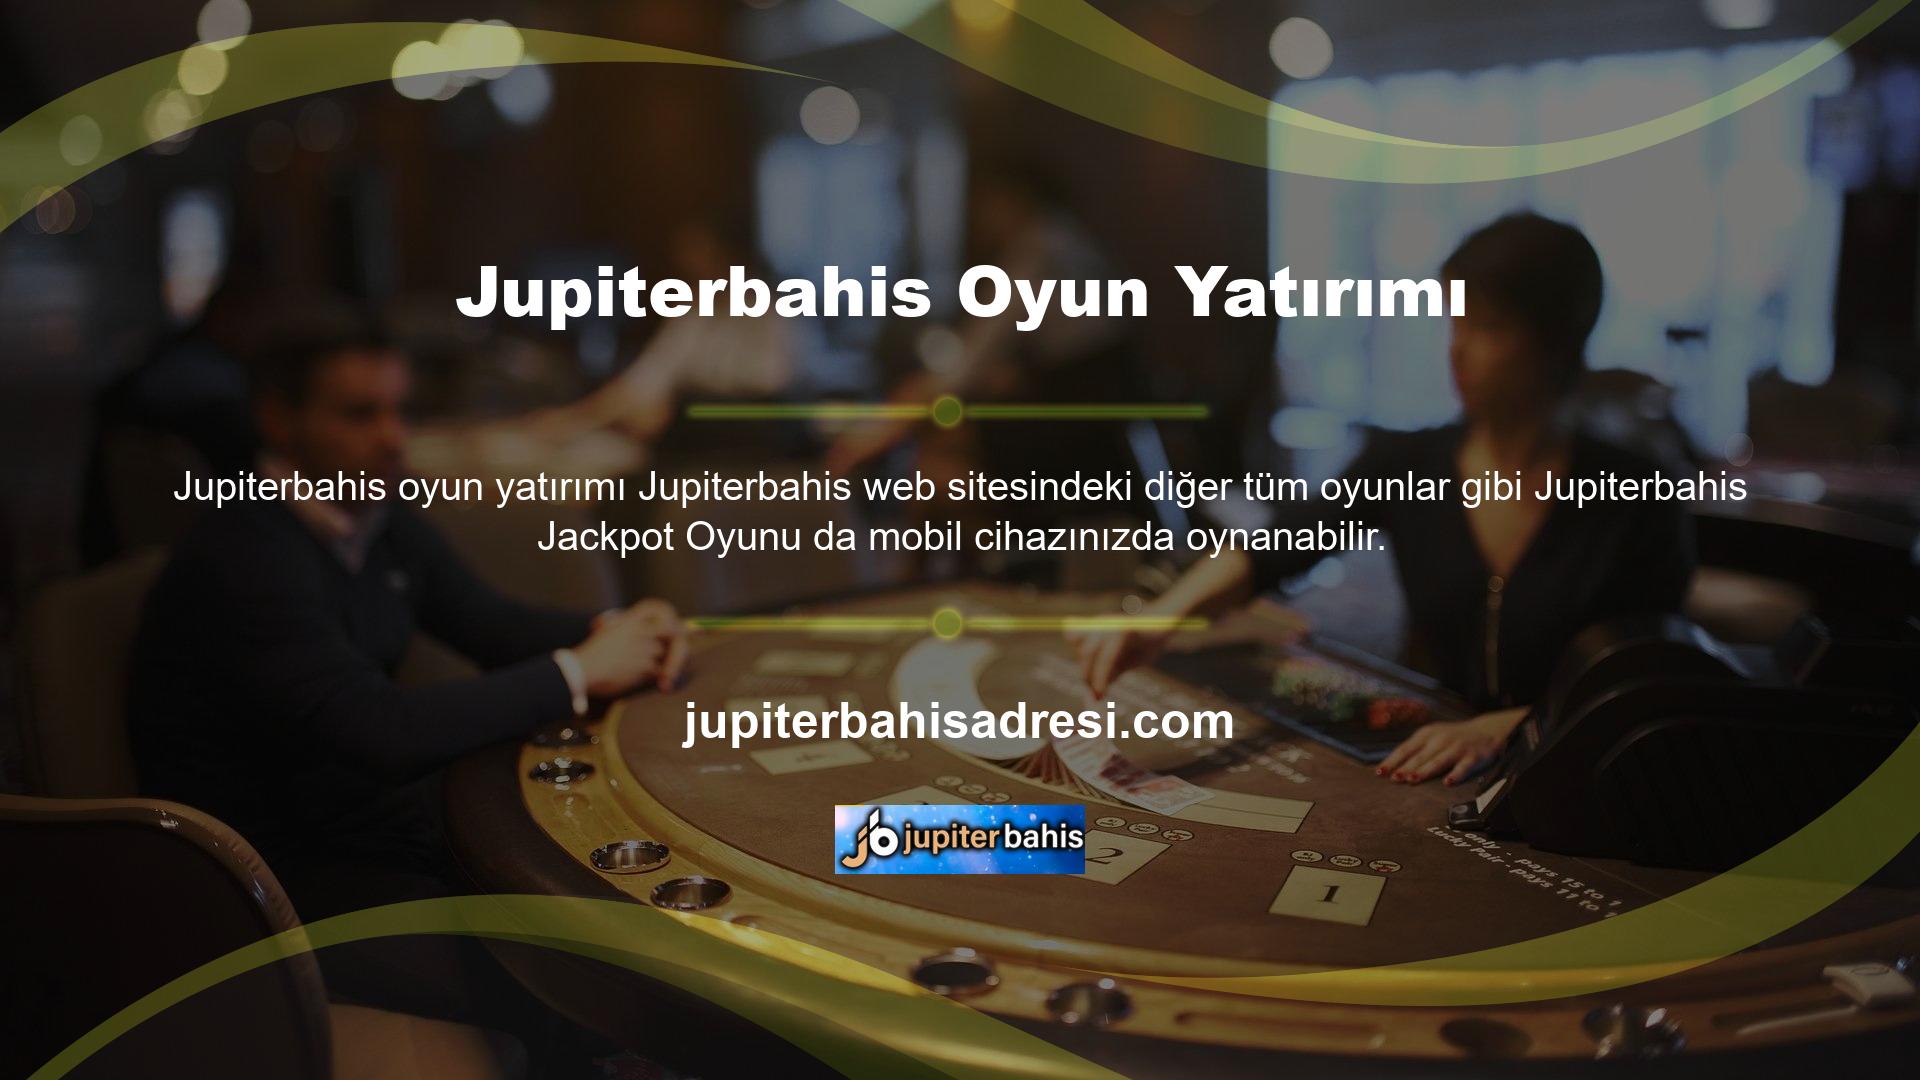 Bu oyunların tamamı casino sektöründeki tanınmış yazılım şirketlerine aittir